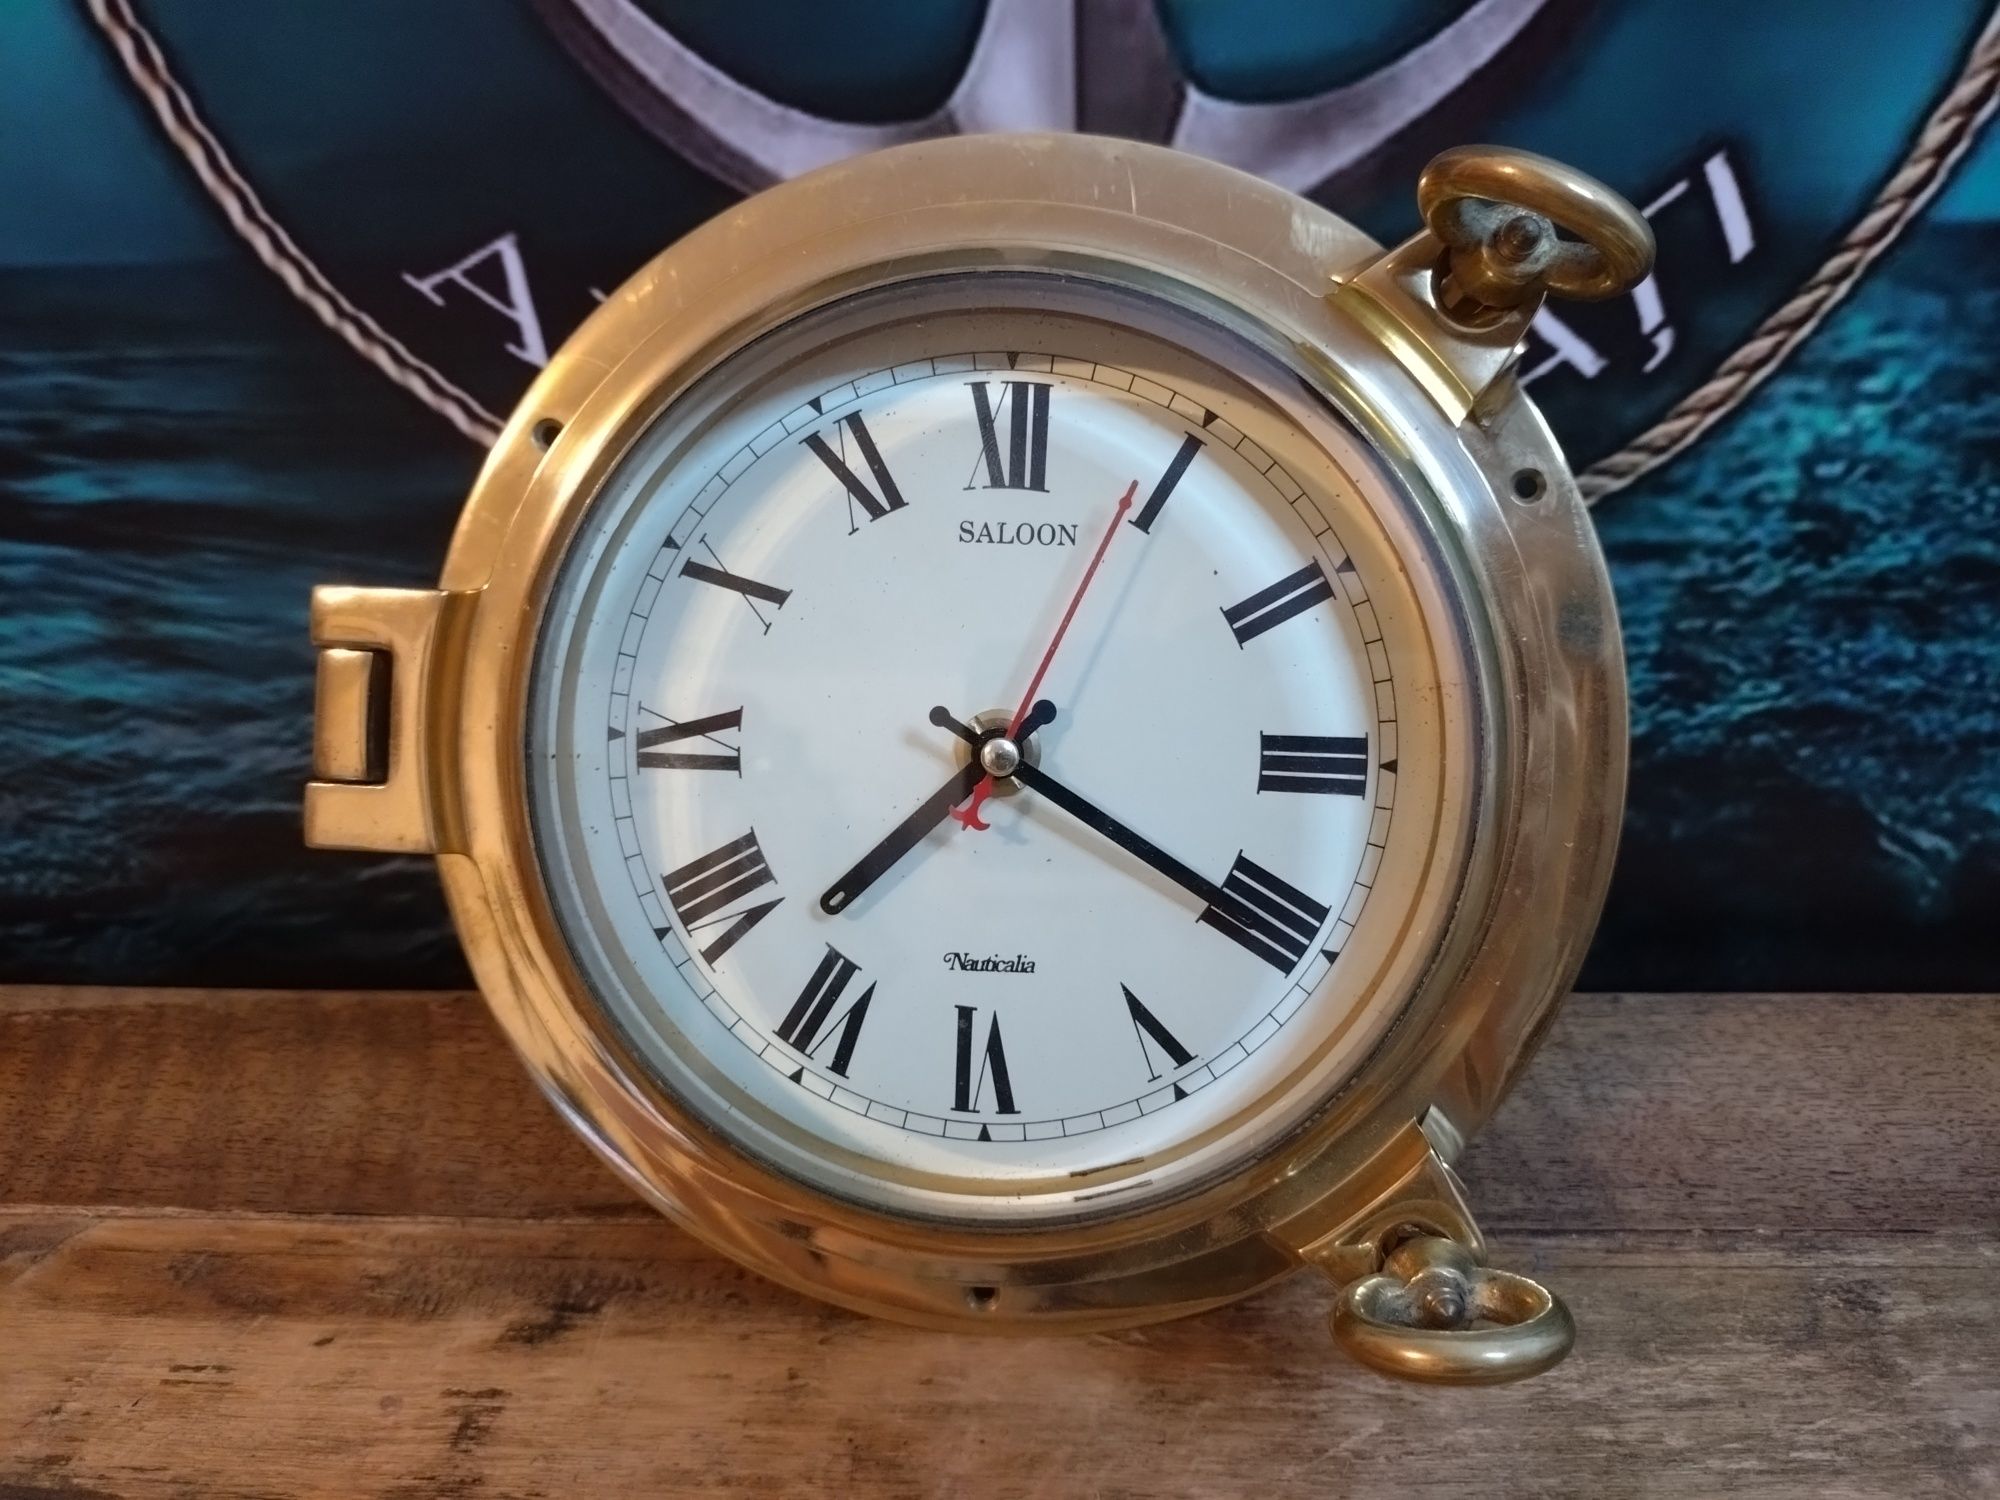 Nautica ceas Quartz marinăresc hublou bronz